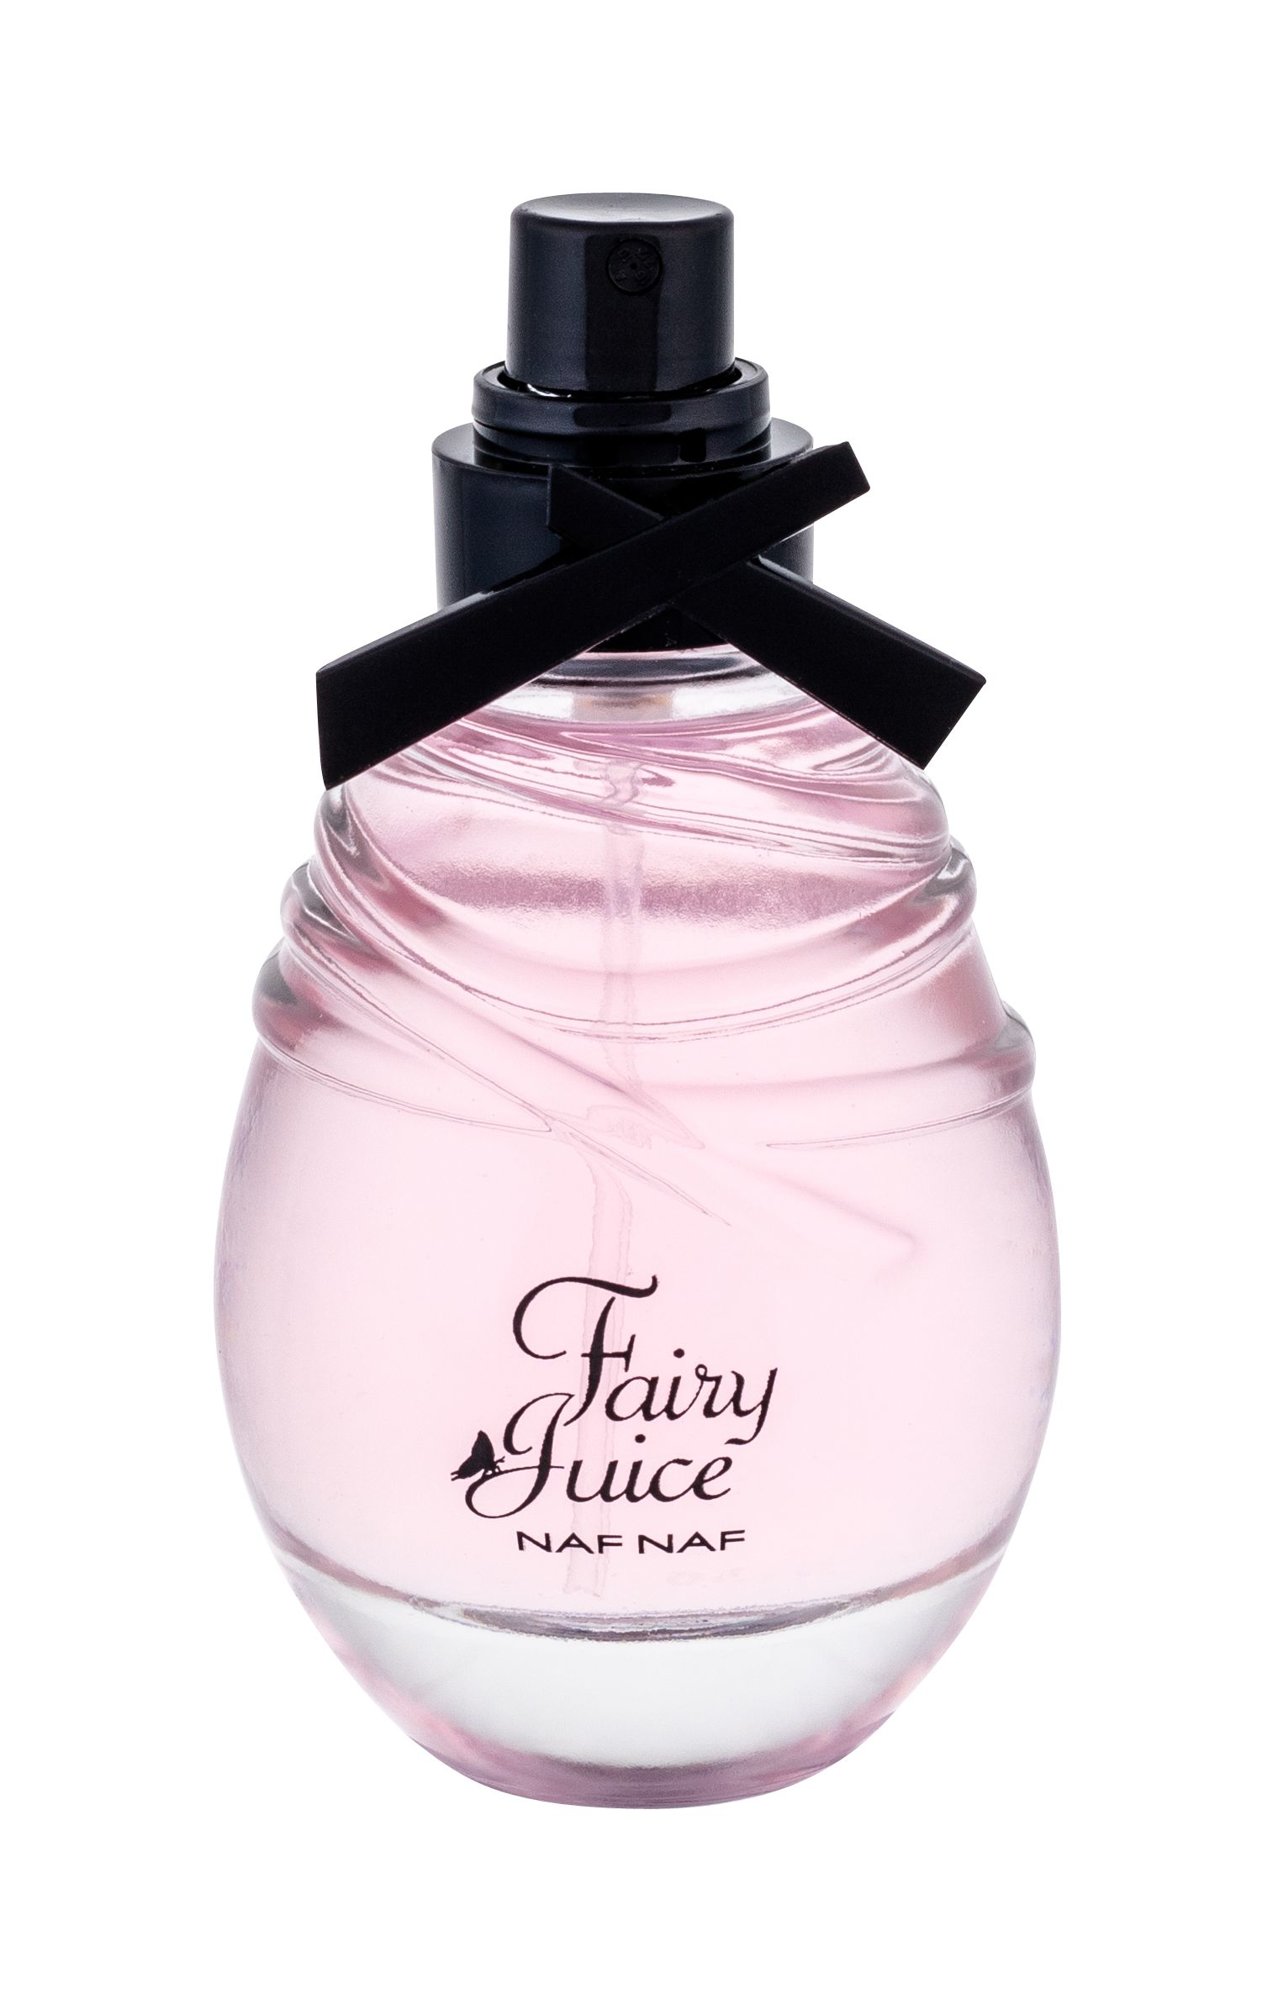 NAF NAF Fairy Juice Pink